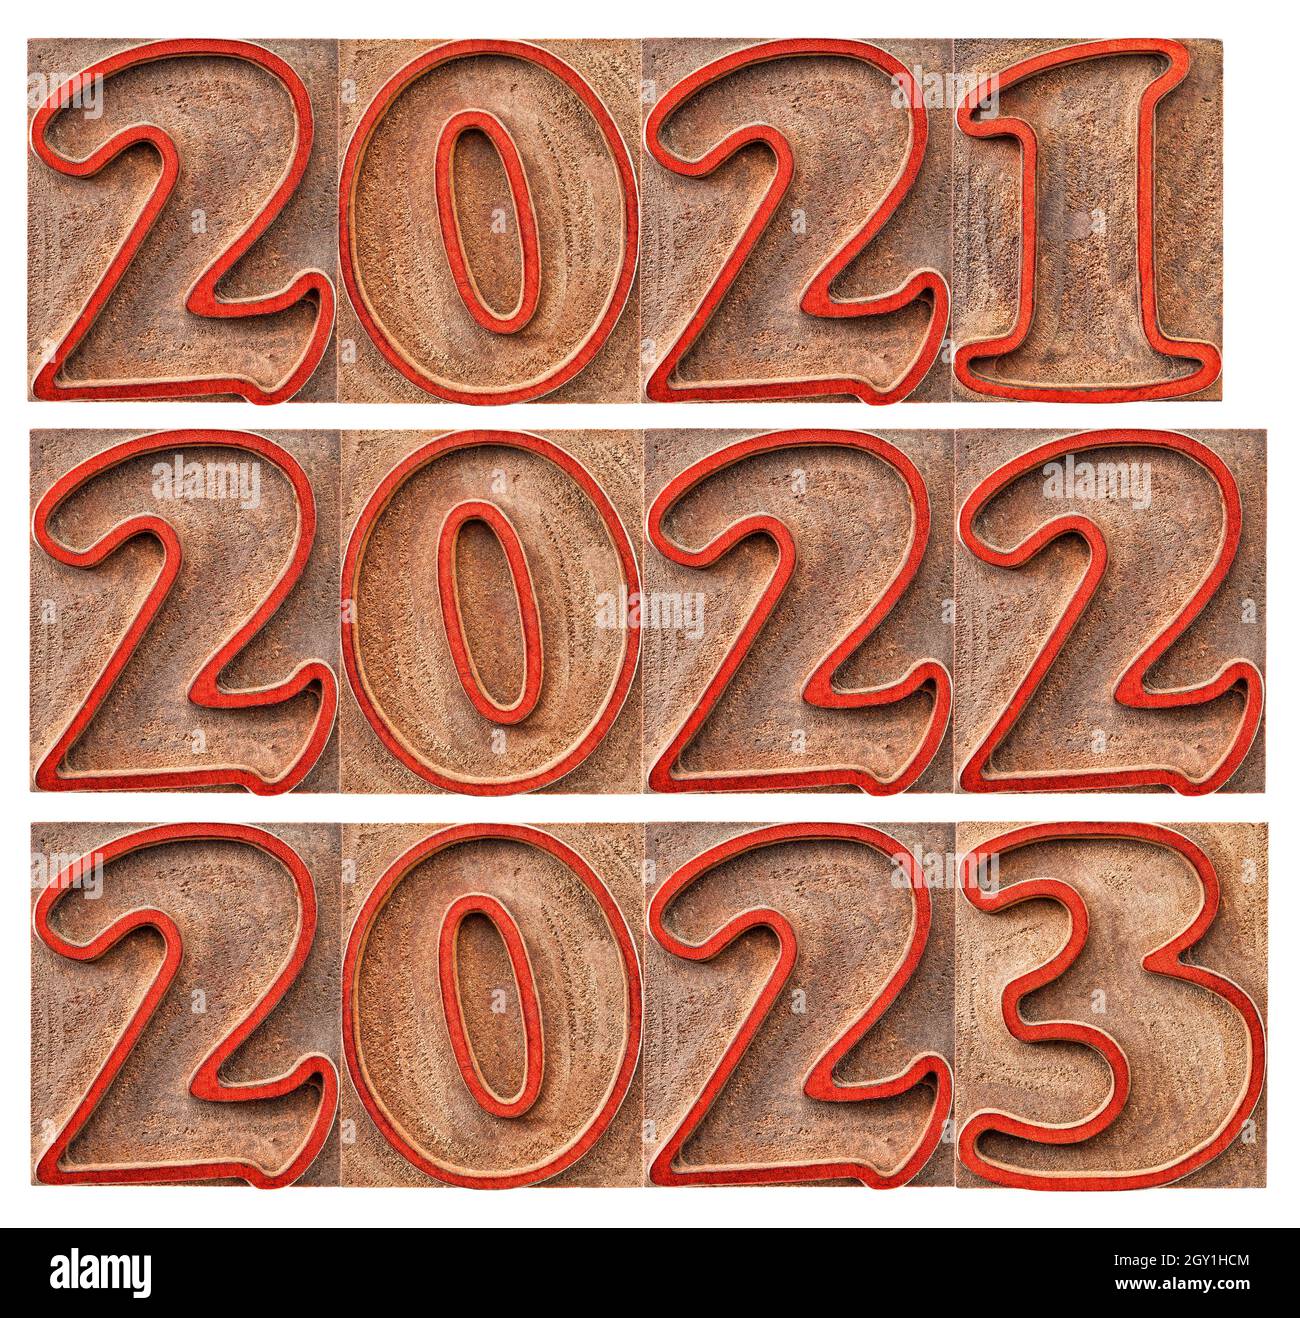 anni passati e successivi (2021, 2022, 2023) in blocco tipo legno di stampa letteraria, macchiati da inchiostri rossi, isolati su bianco Foto Stock